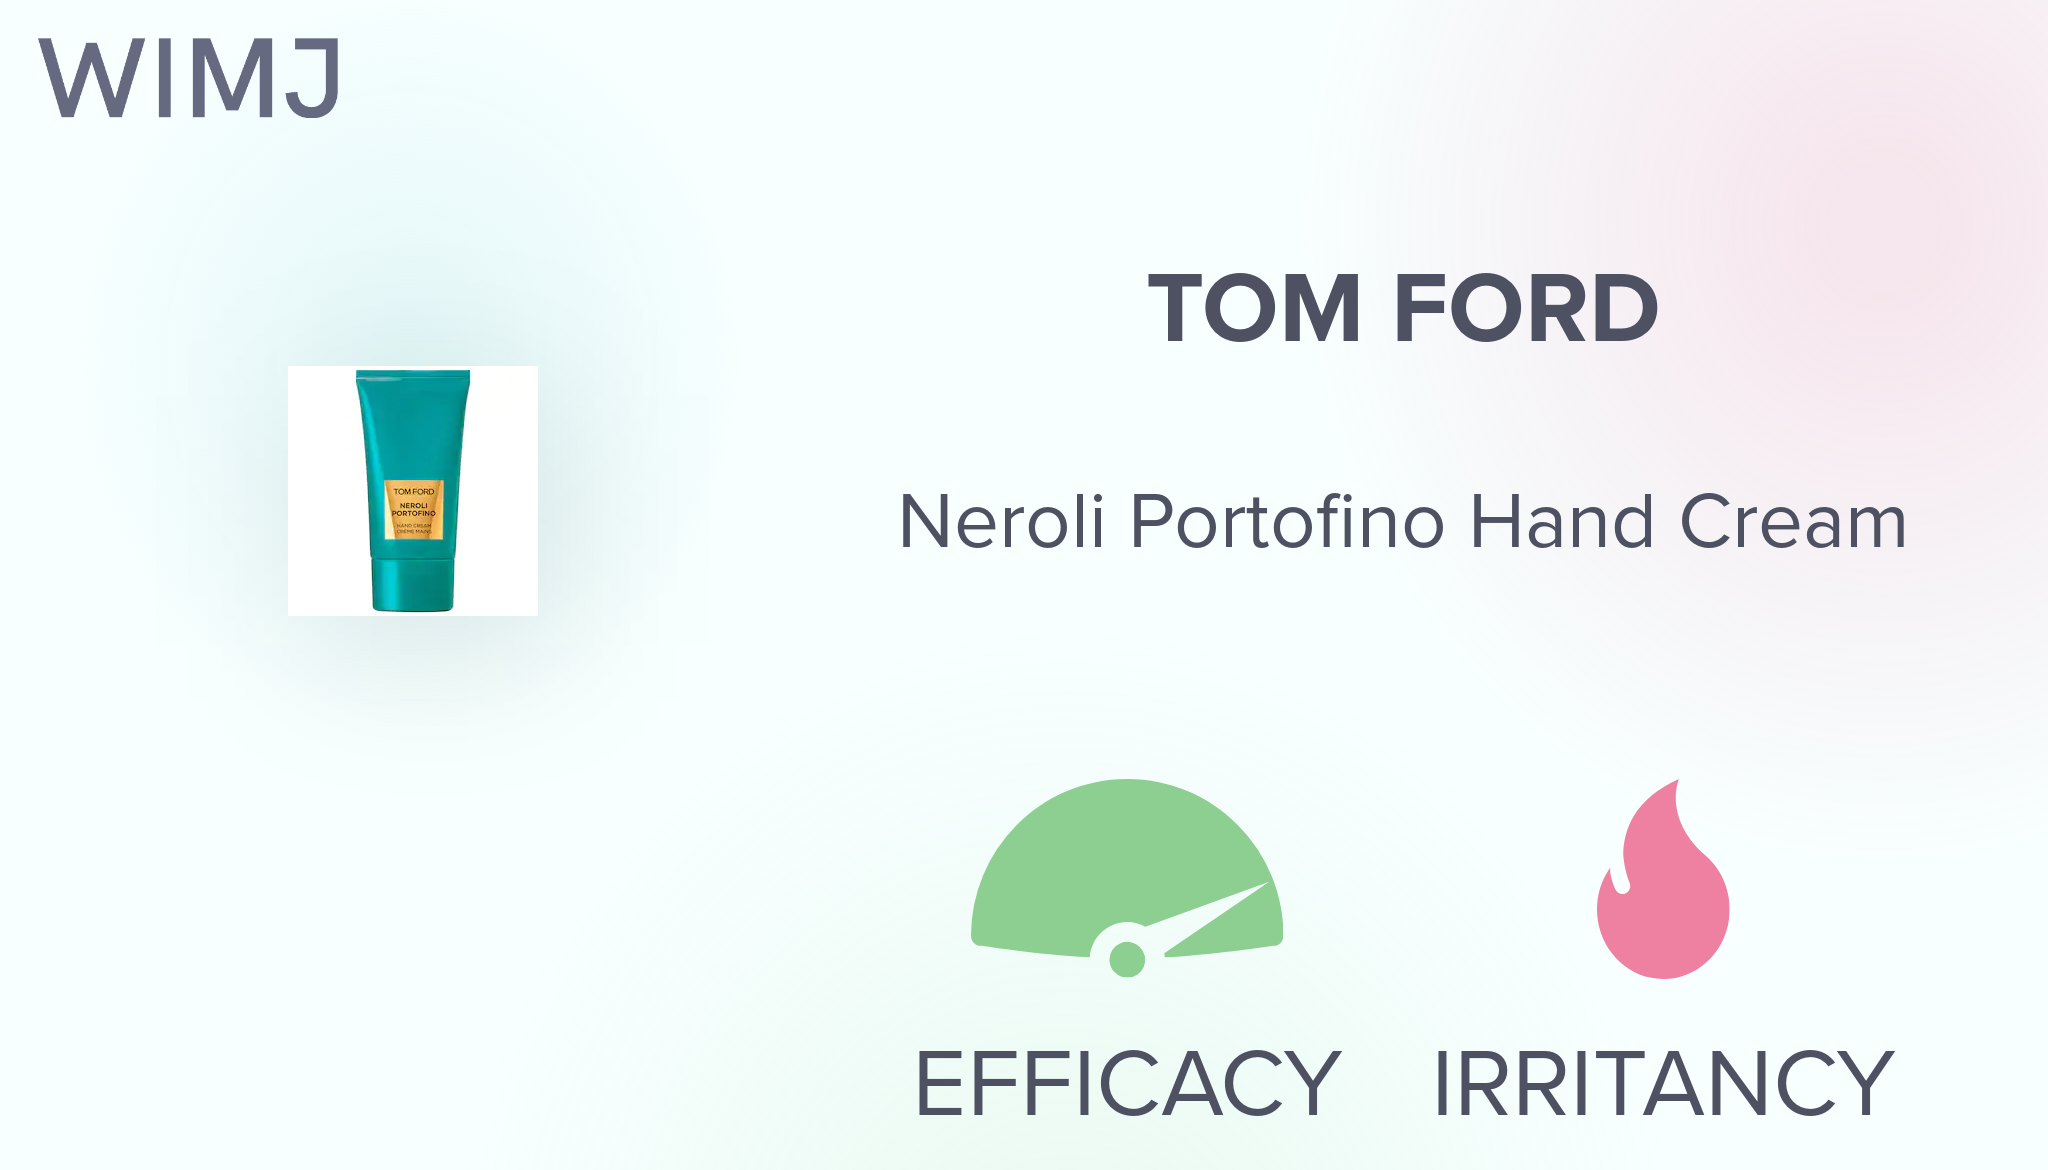 Tom Ford Neroli Portofino Hand Cream bk738 